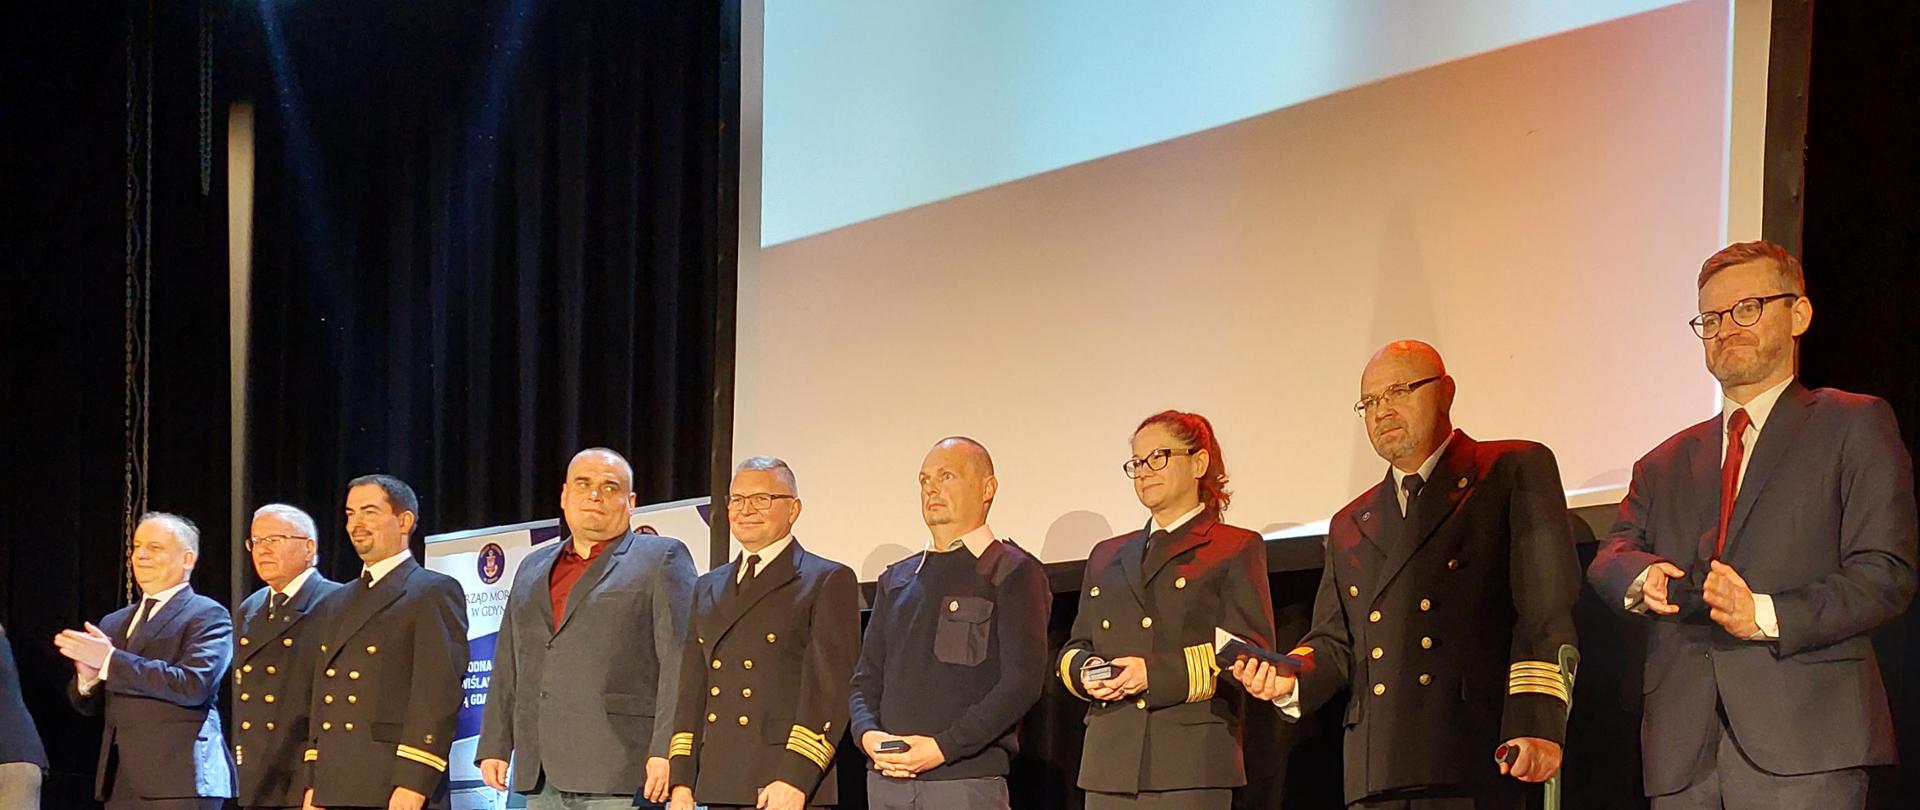 Pracownicy Urzędu Morskiego w Gdyni odznaczeni za długoletnią służbę